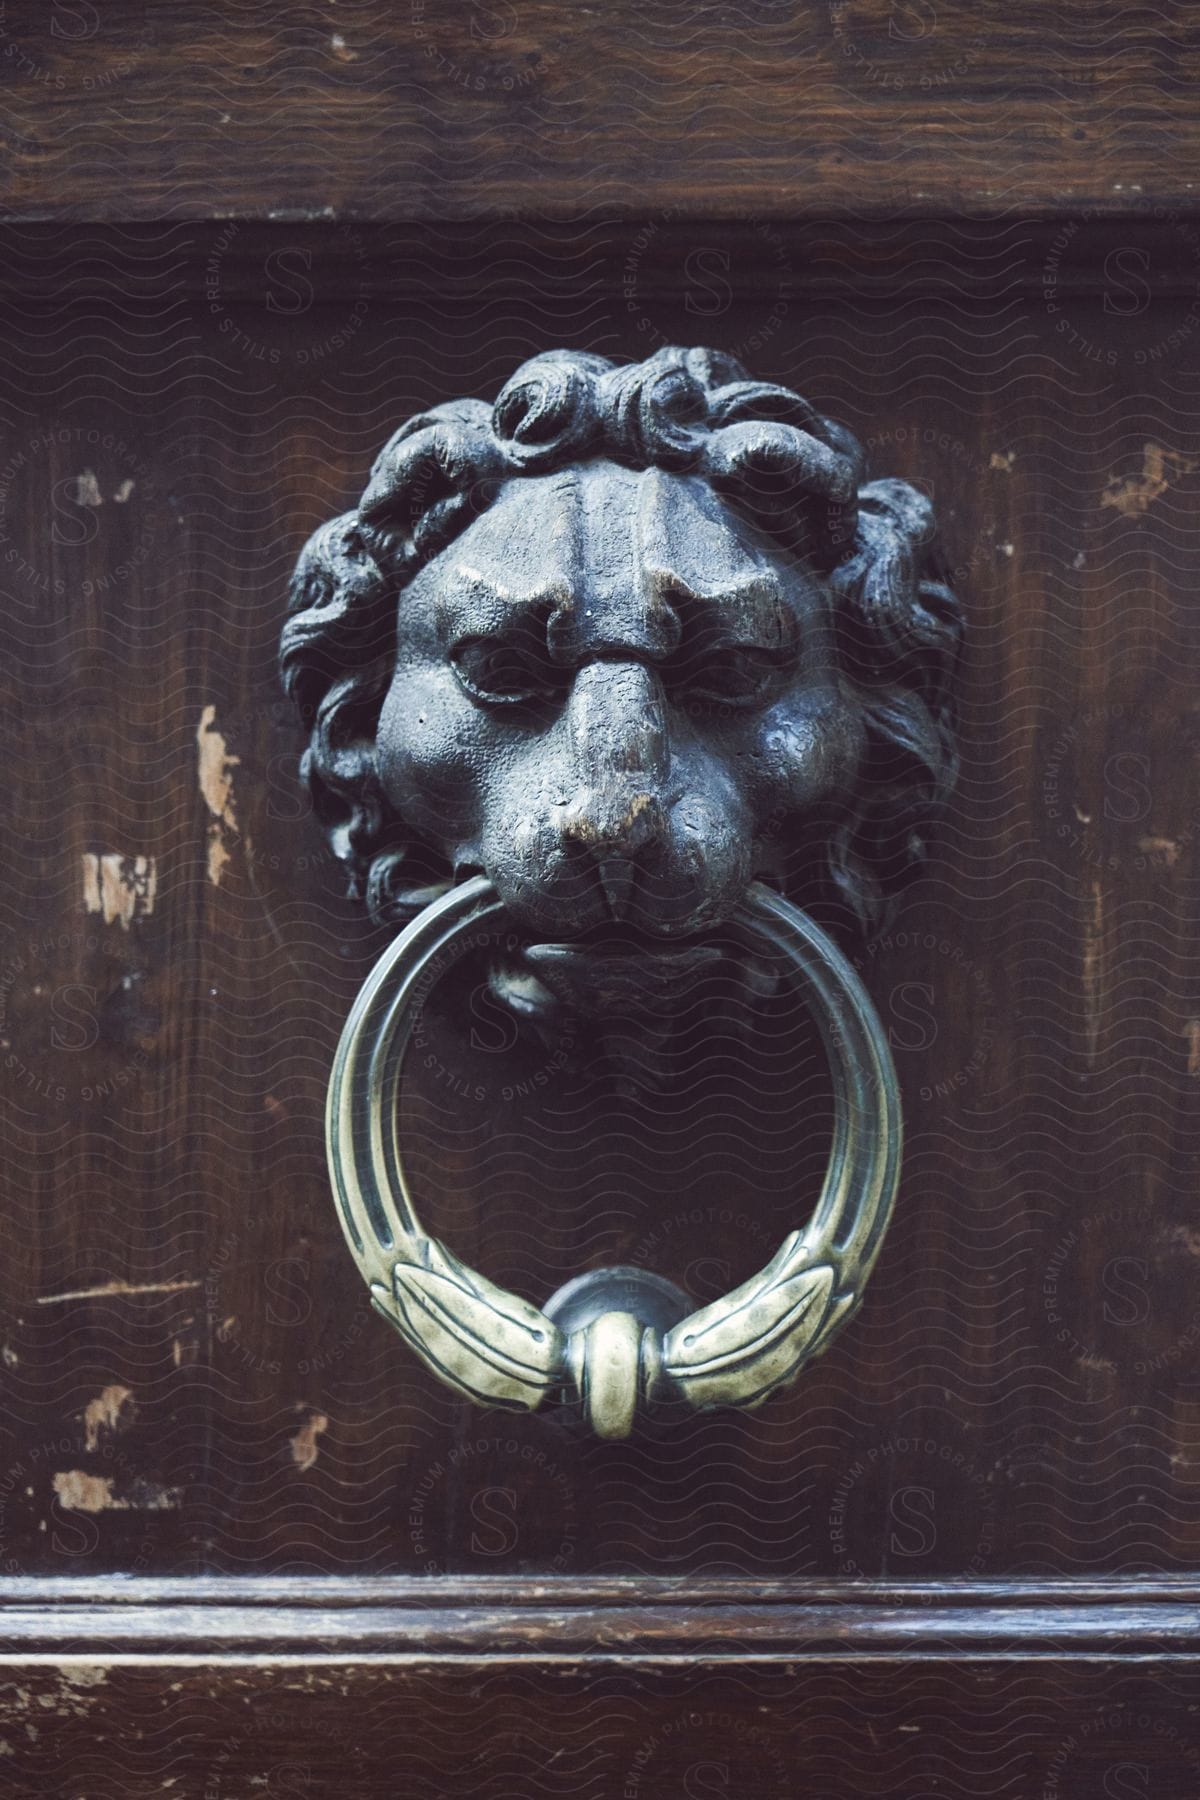 Lionshaped door handle